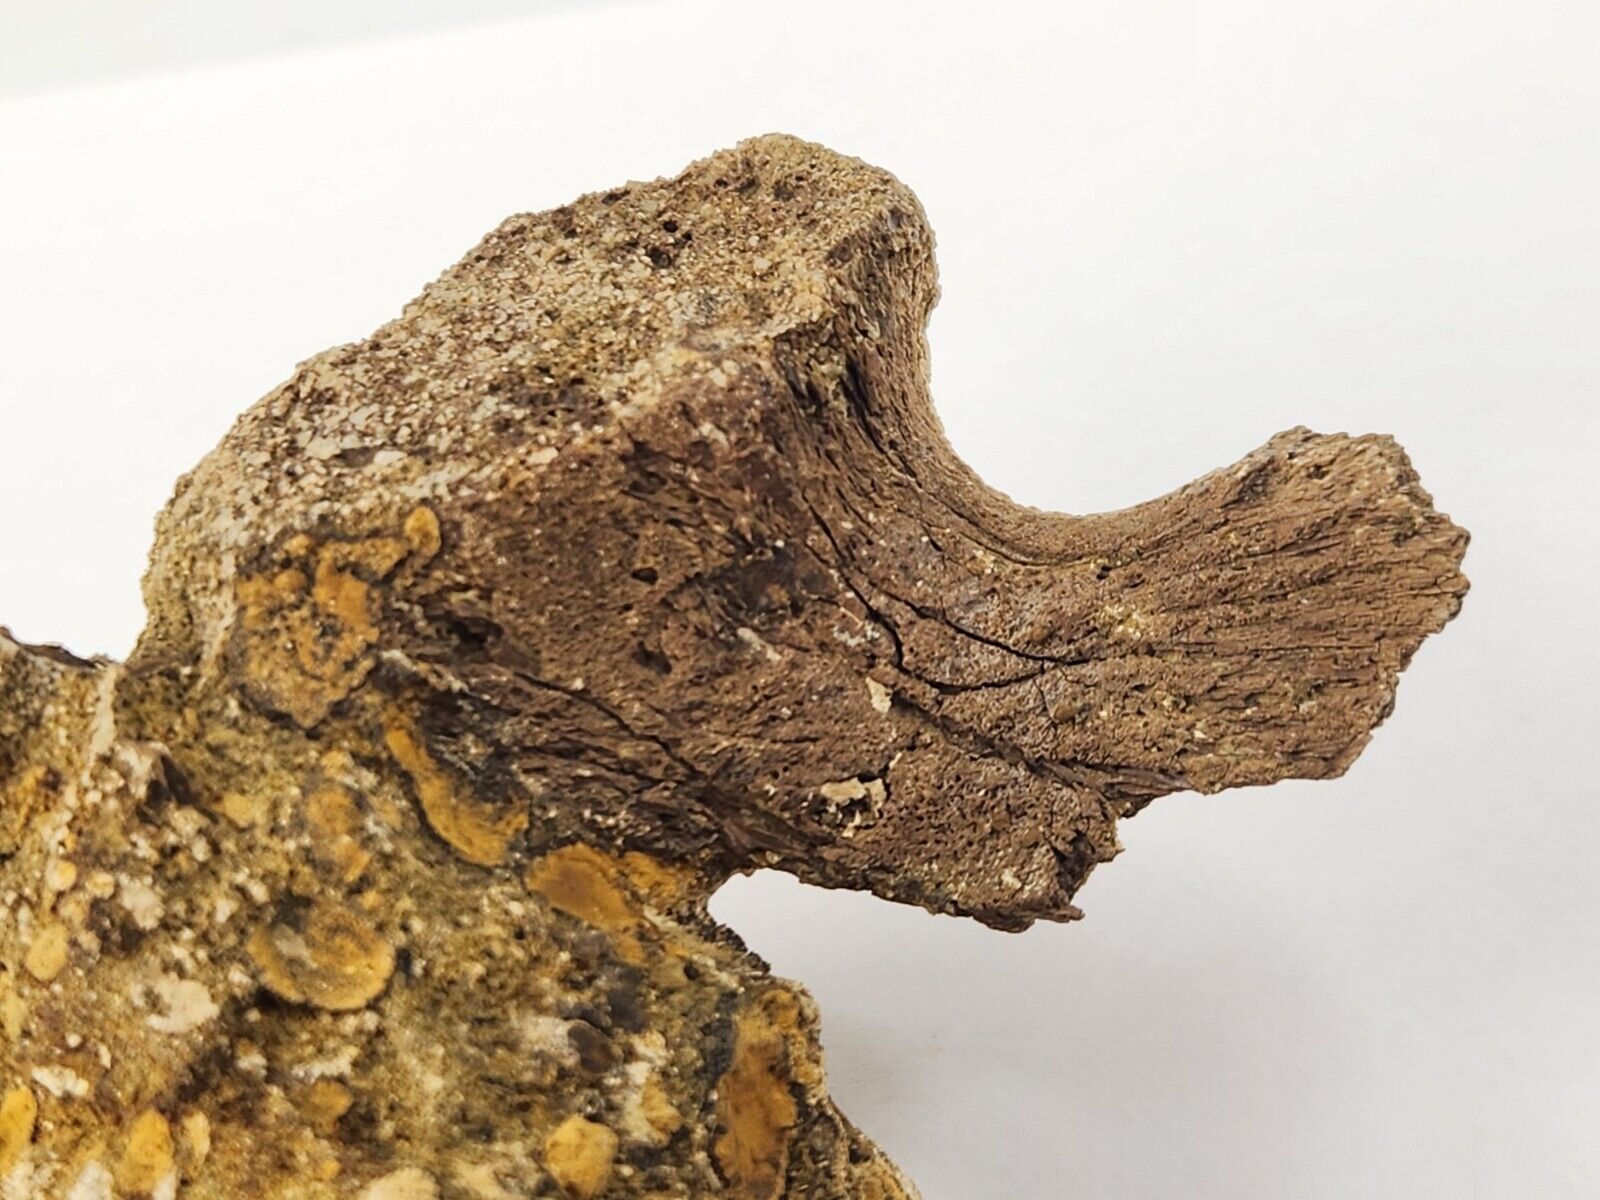 Edmontosaurus Atlantal Neuroarch Fossil - Lance Fm. - Niobrara Co., WY 